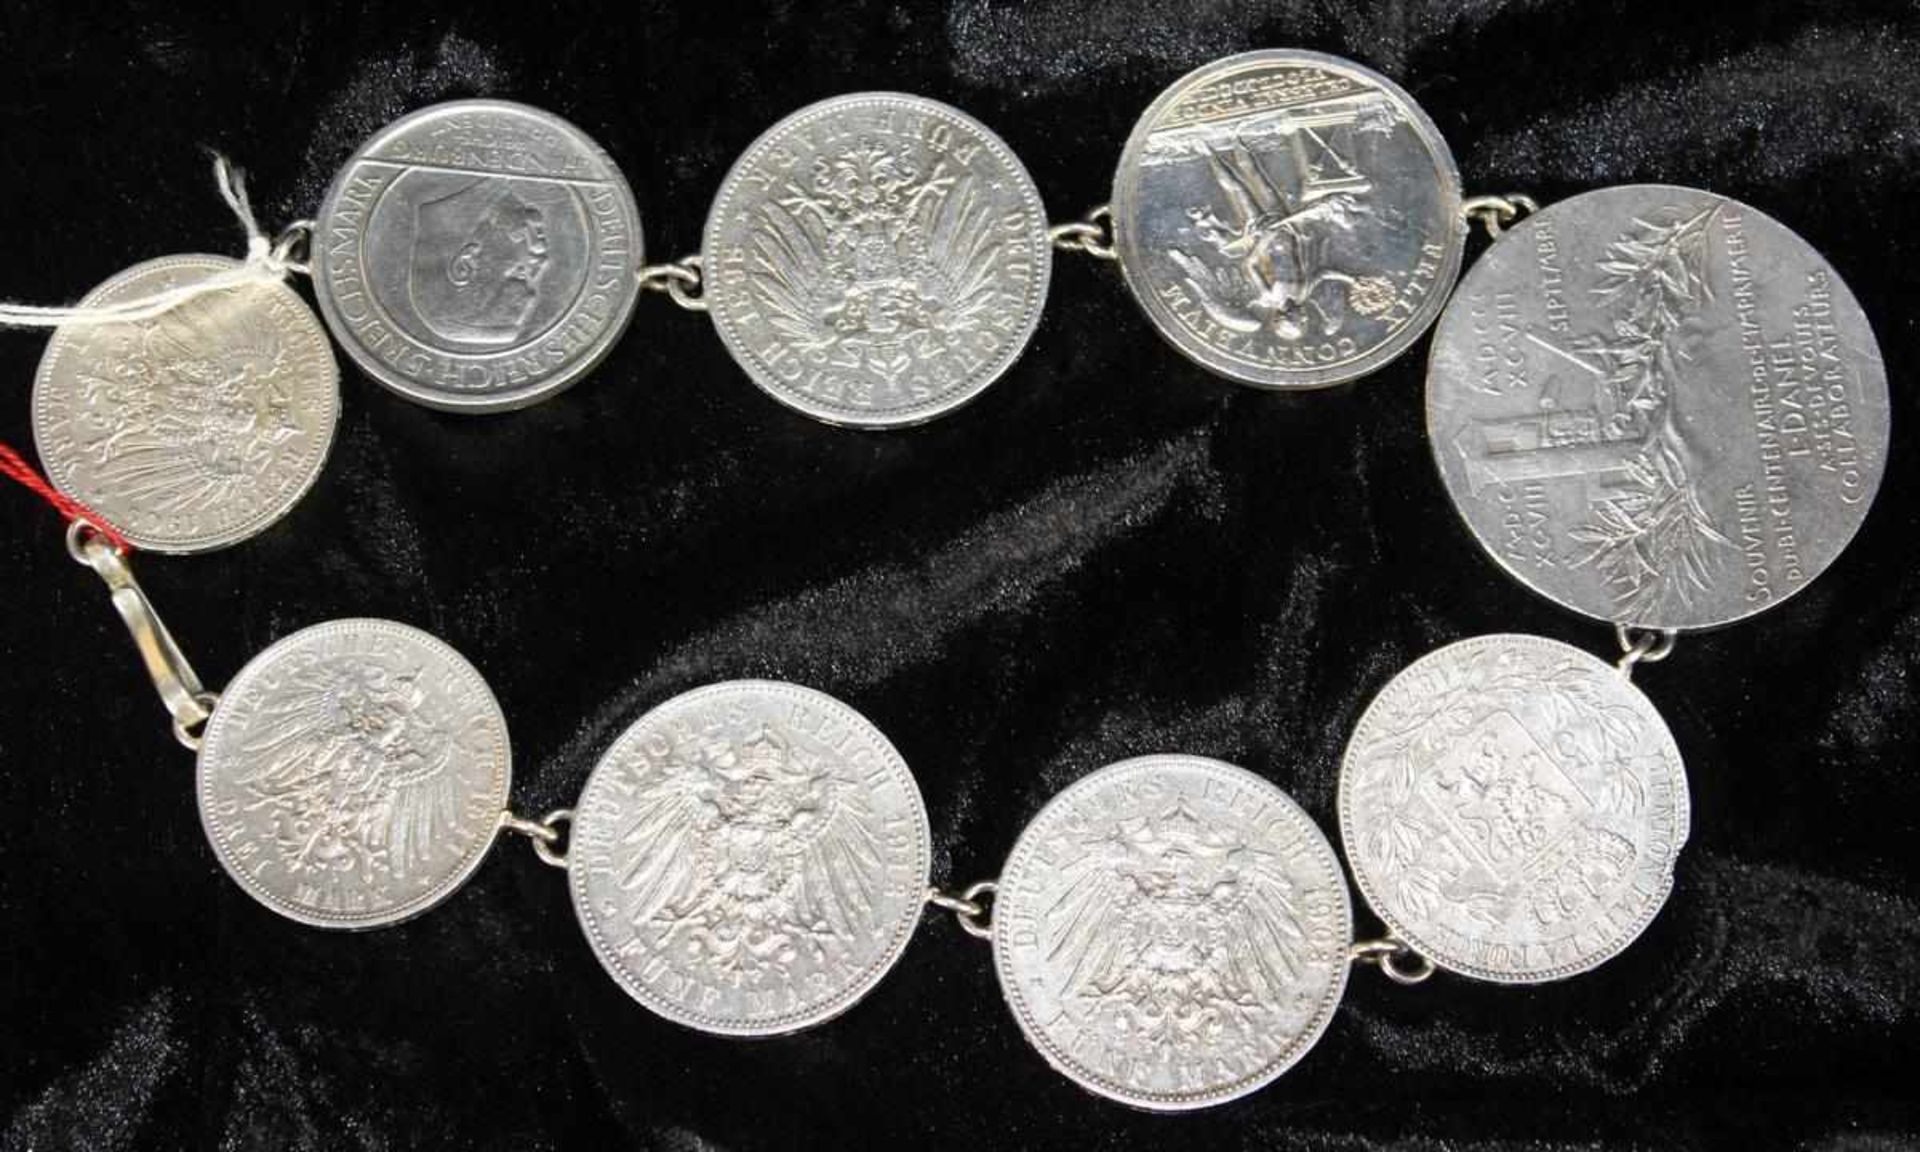 Münzkette mit verschiedenen Silbermünzen, Silber geprüft, Münzen u. a. Deutsches Reich 1871-1945,